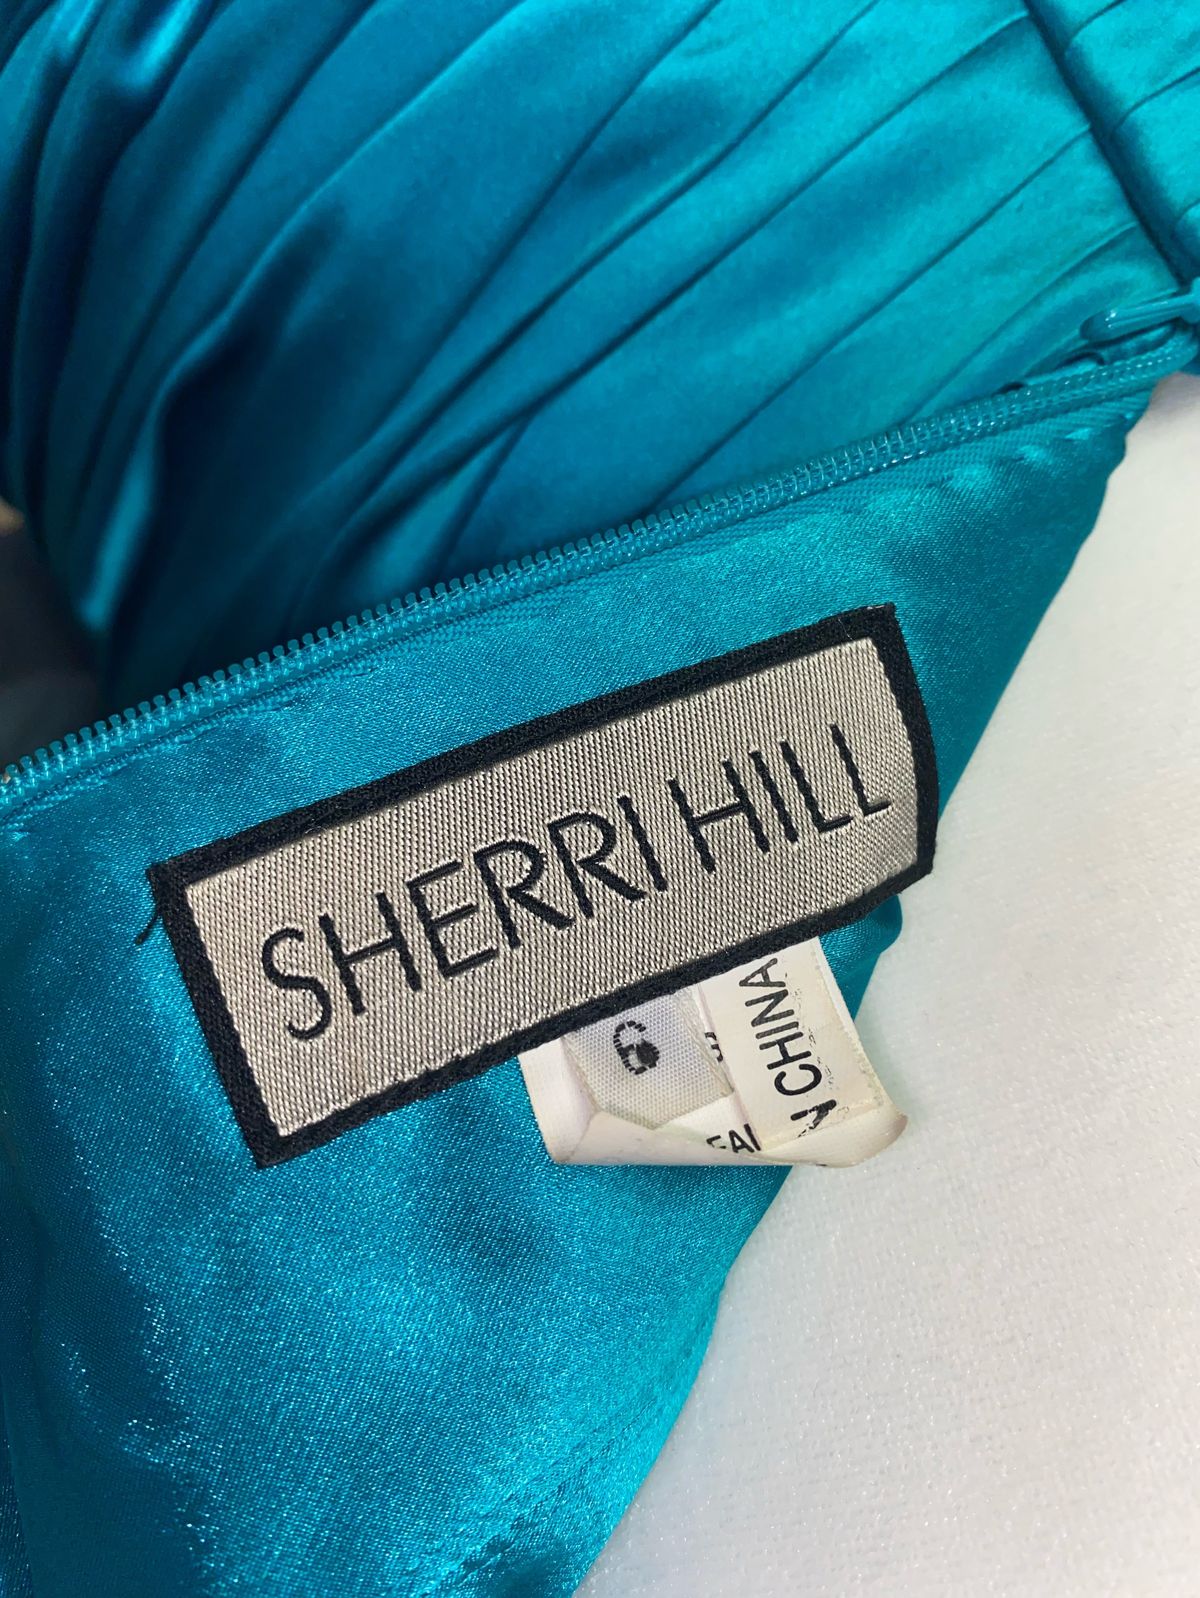 Sherri Hill Size 6 Prom One Shoulder Satin Blue Side Slit Dress on Queenly